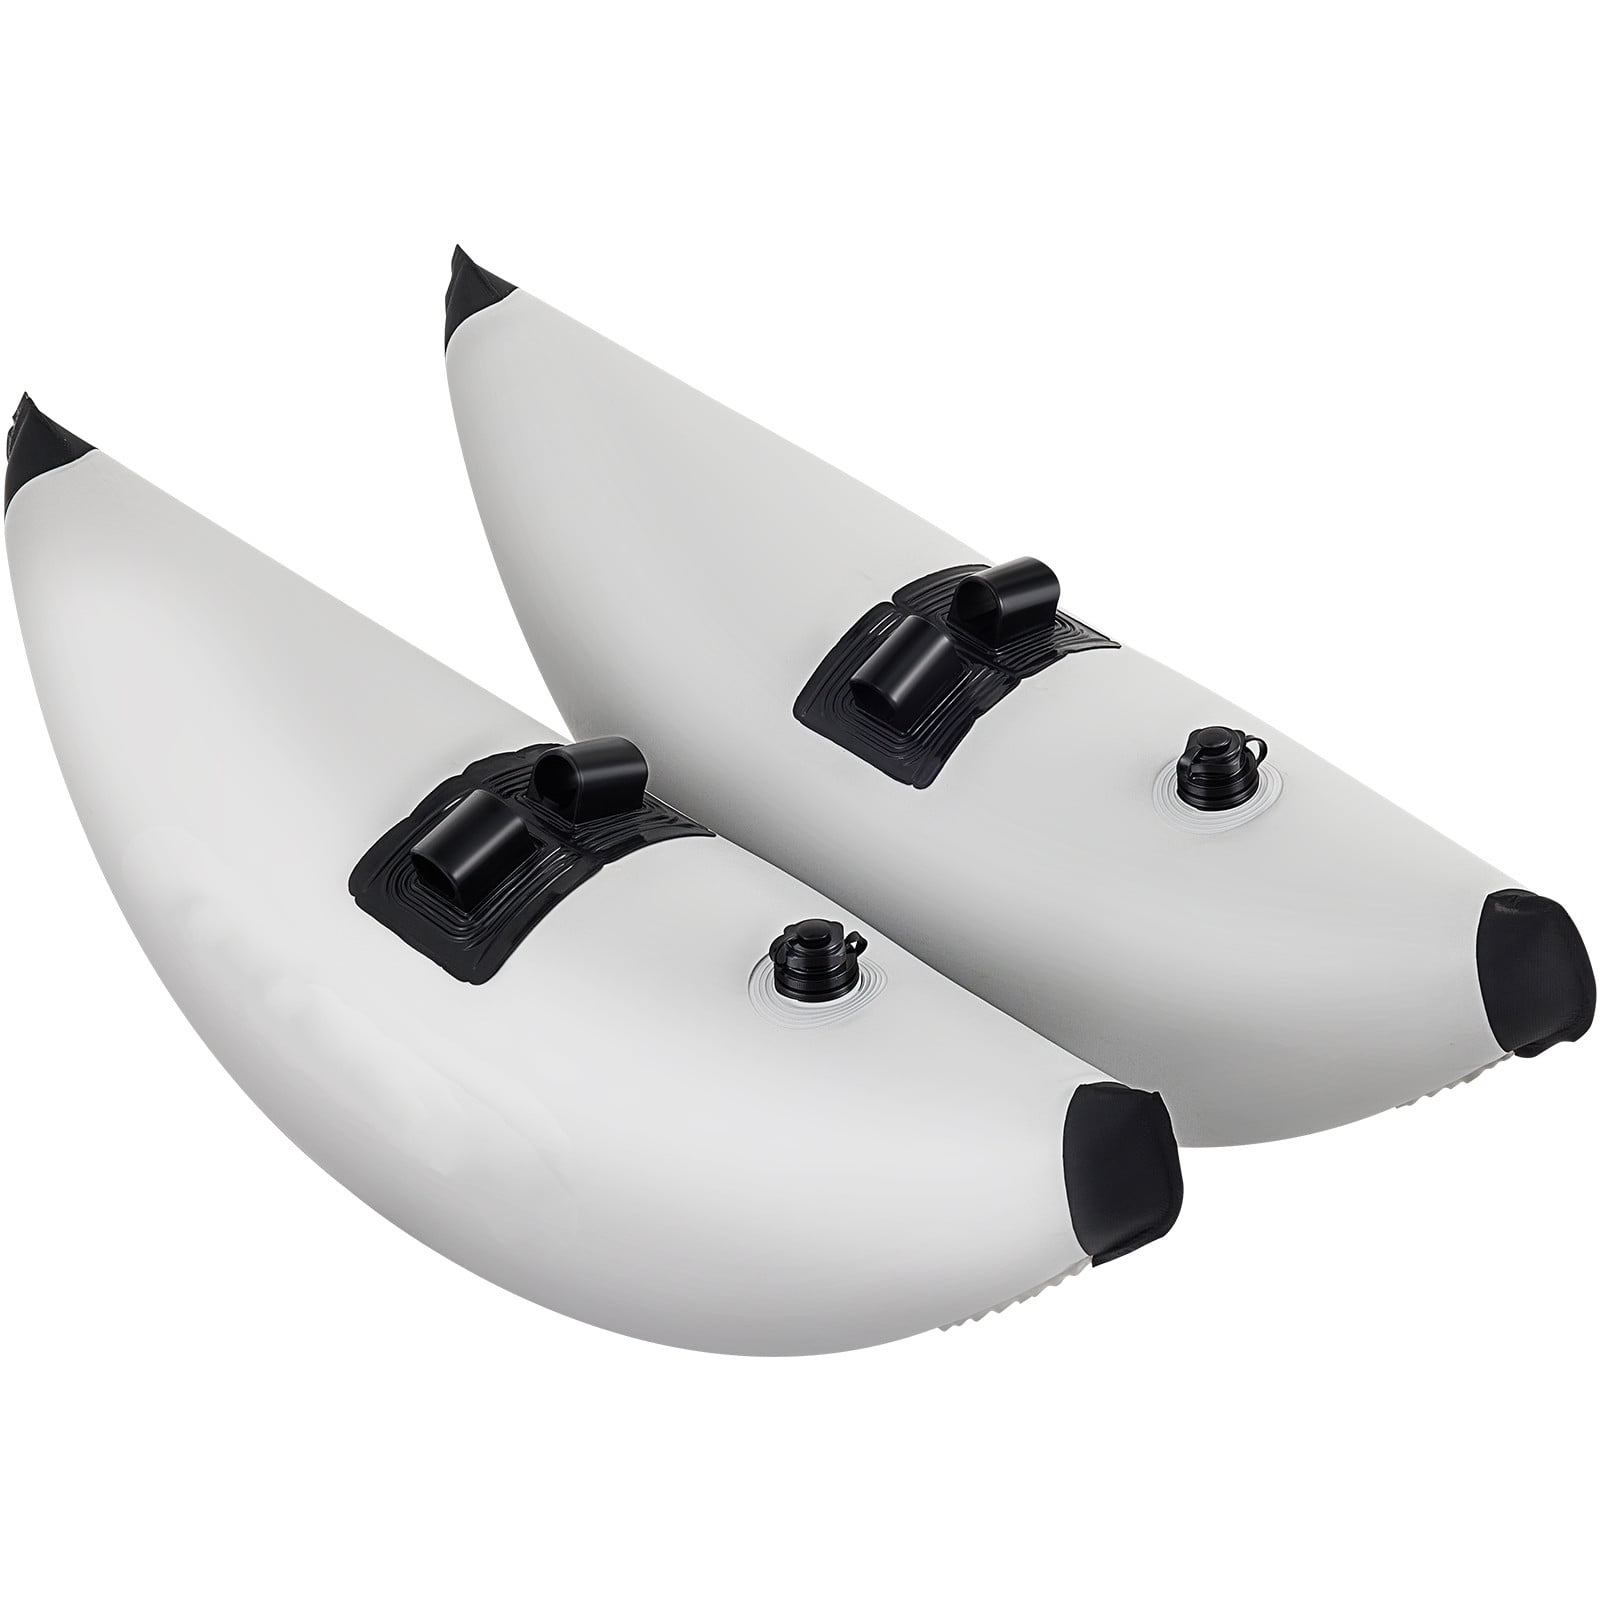 2 Pcs boat accessories Kayak Fishing Rod Holder Mount Kayak